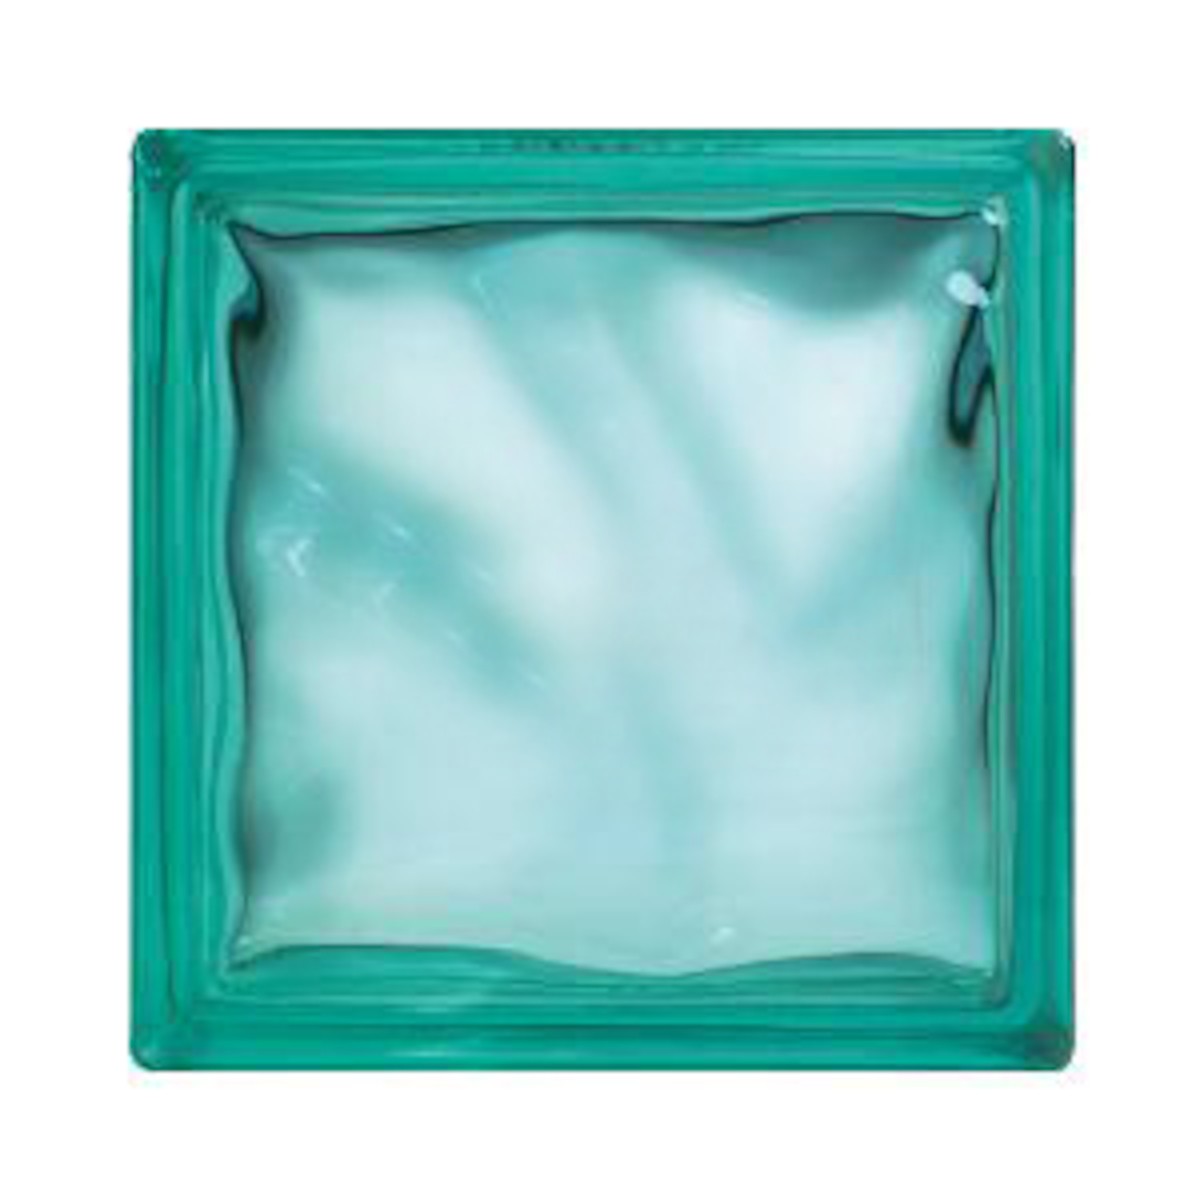 Luxfera Glassblocks turquoise 19x19x8 cm mat 1908WTURQUOISE Glassblocks